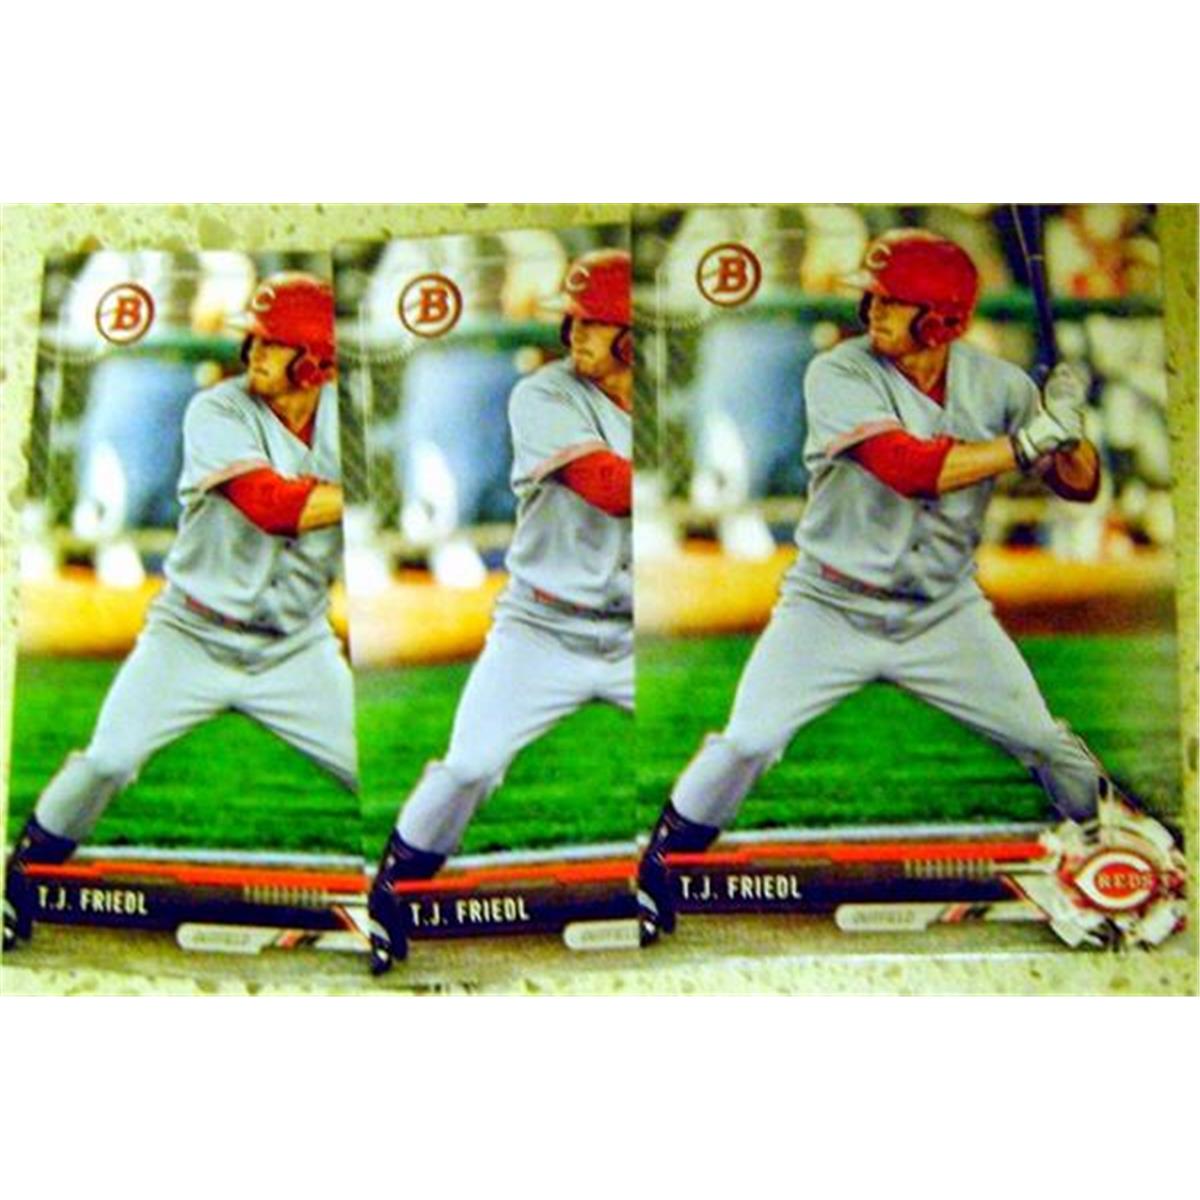 597895 T.J. Friedl Baseball Card - Rookie Prospect Lot of 3 2017 Topps Bowman No.BD8 Cincinnati Reds -  Autograph Warehouse